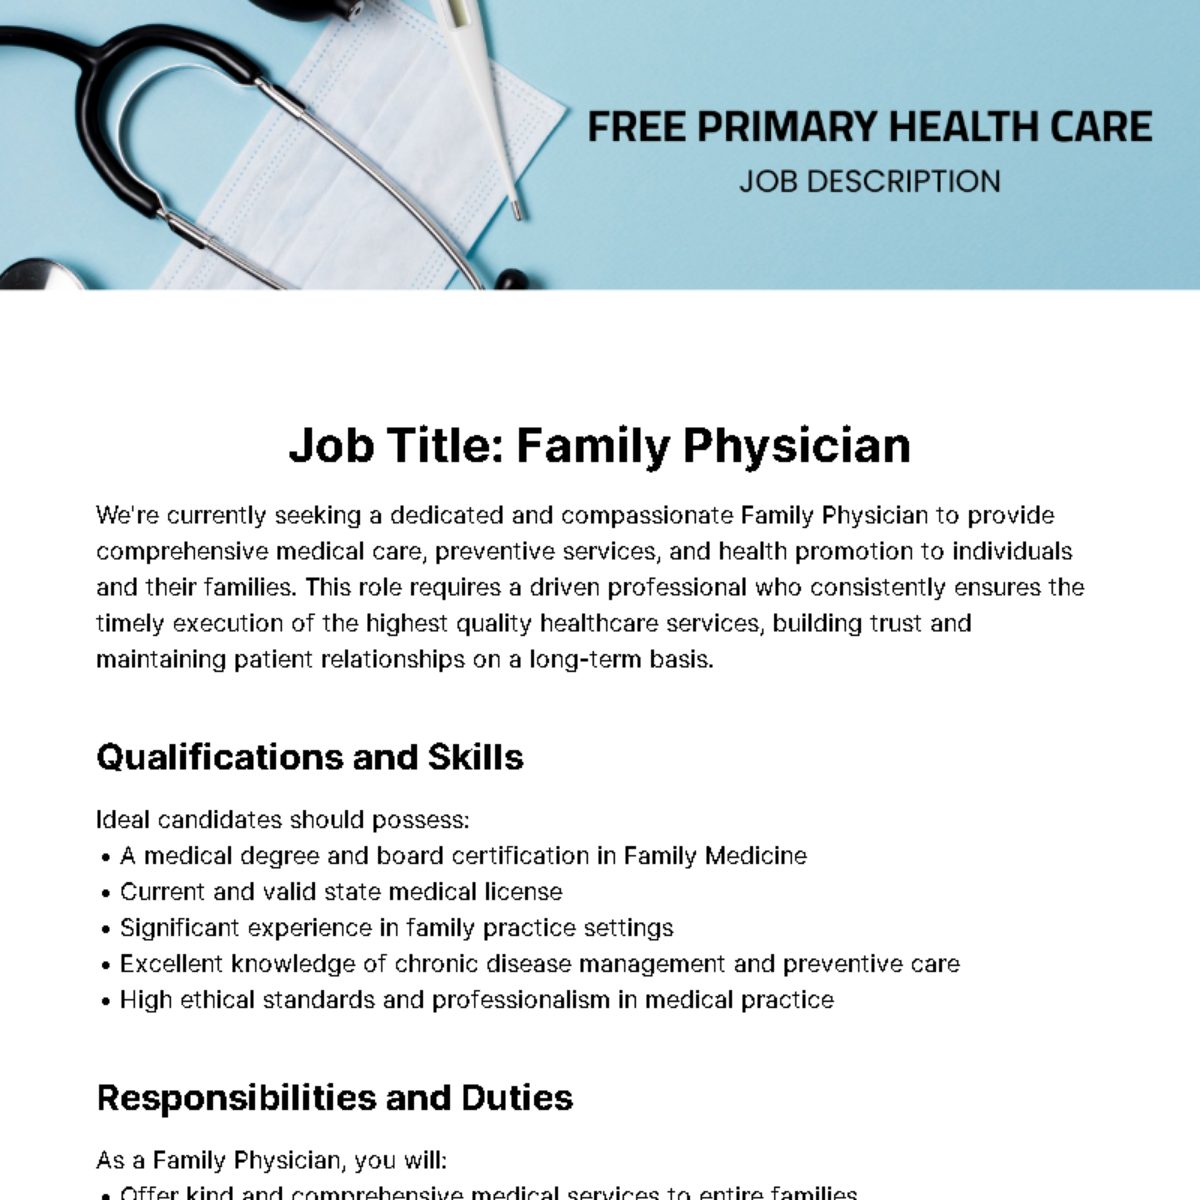 Free Primary Health Care Job Description Template